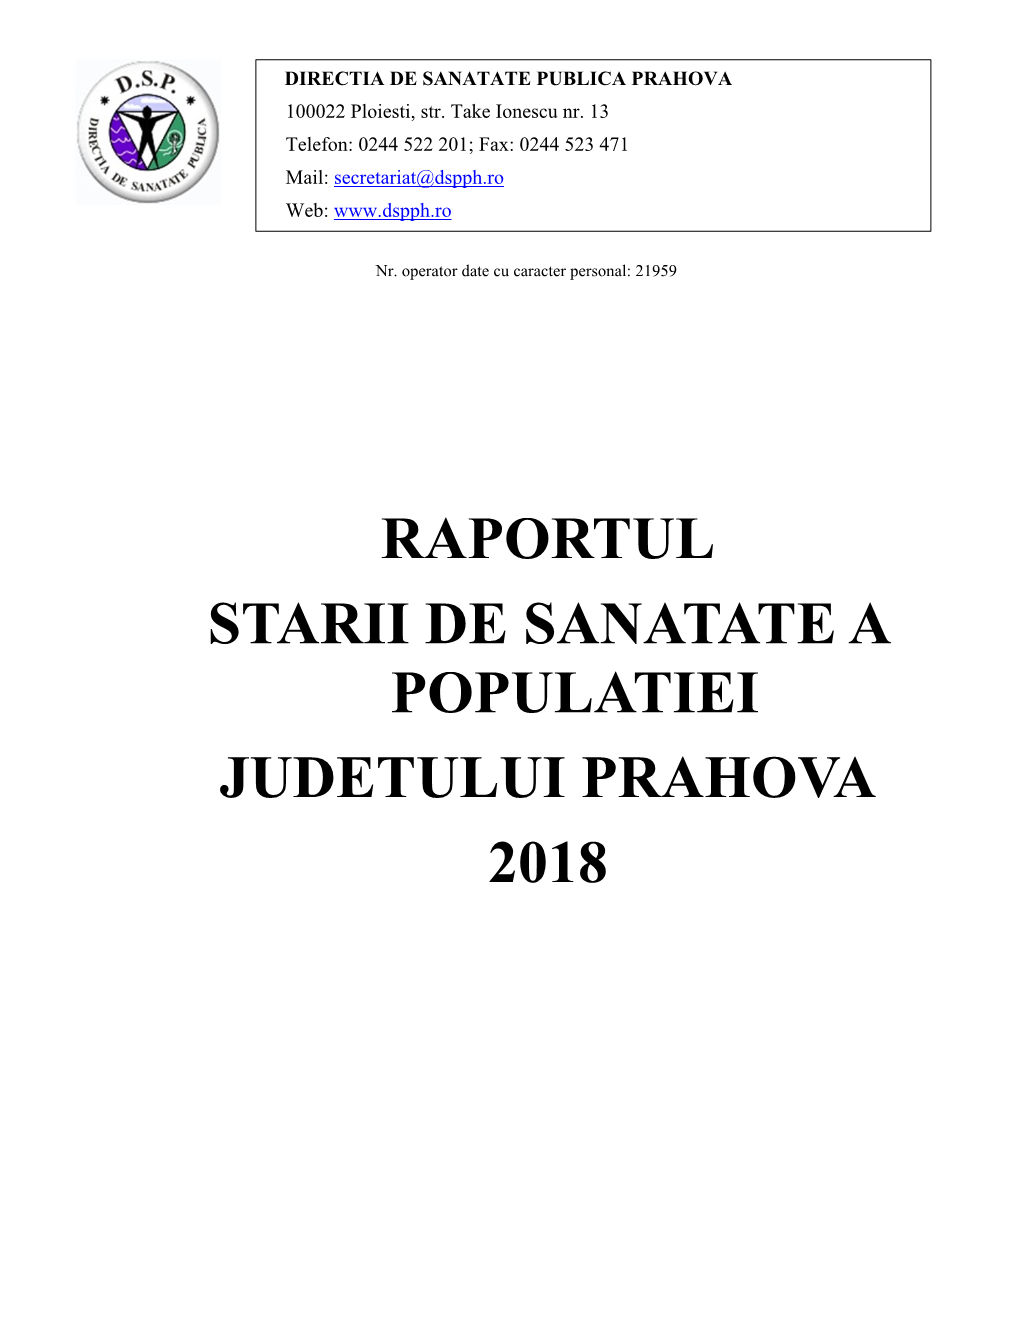 Raportul Starii De Sanatate a Populatiei Judetului Prahova 2018